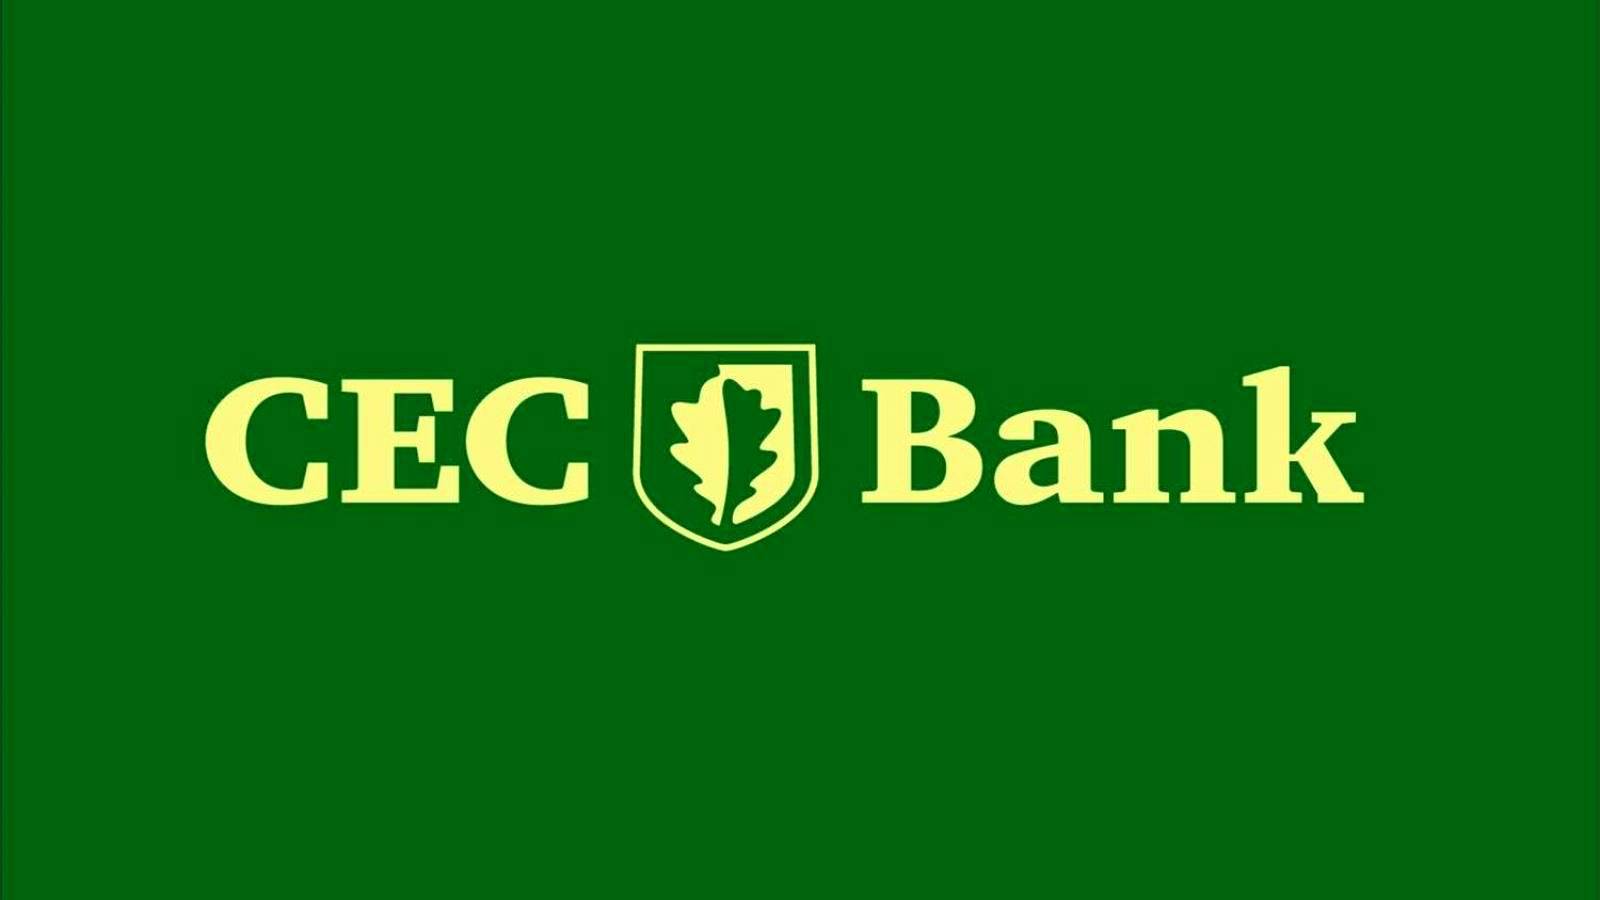 Décision IMPORTANTE de la banque CEC pour les clients annoncée officiellement